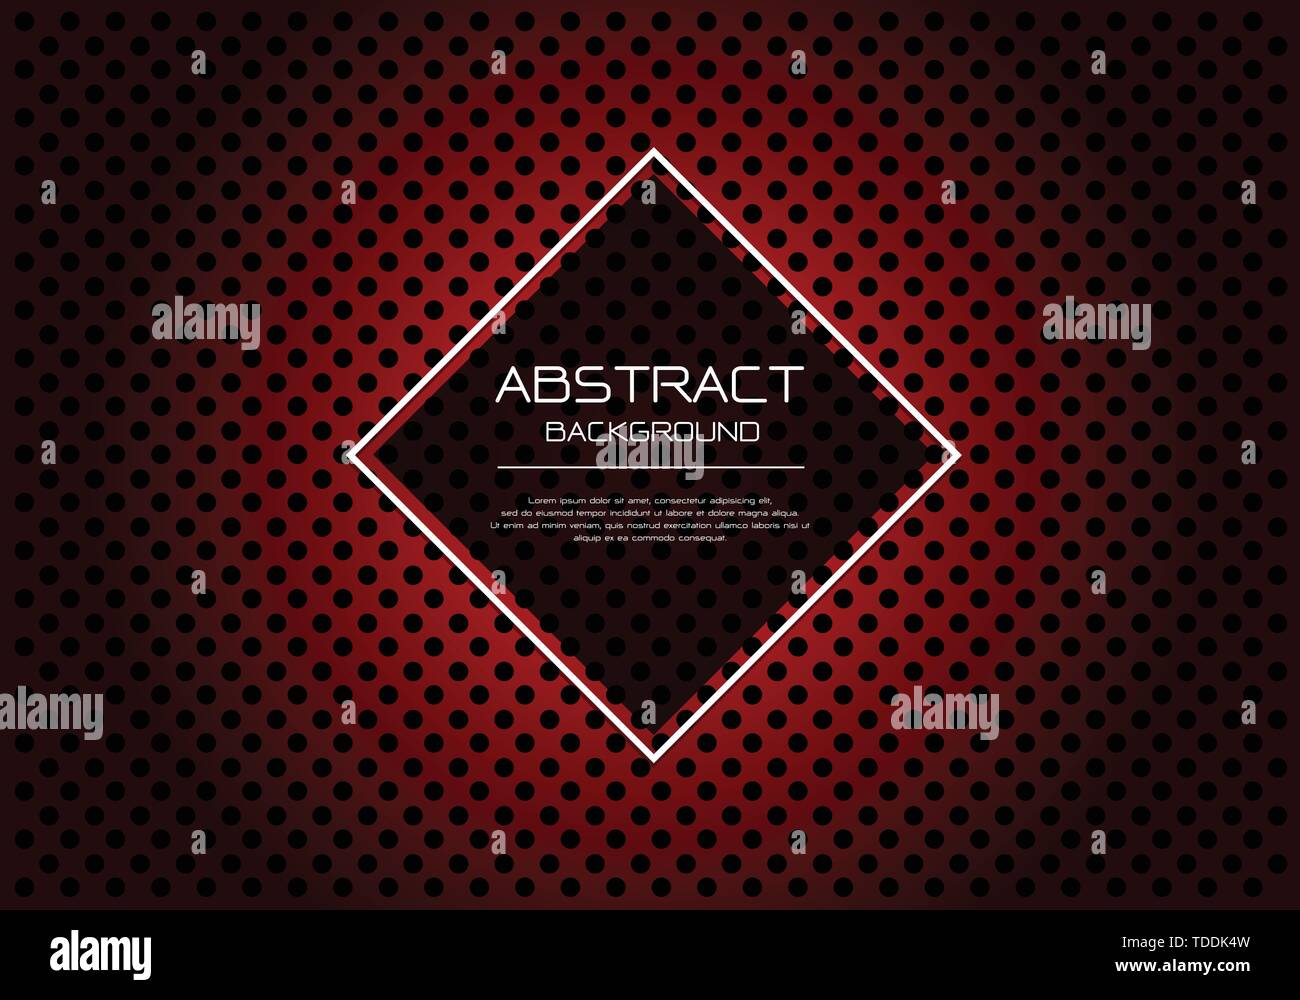 Abstract vector Luxus roter Kreis mesh Muster auf Schwarz mit Diamond banner weißer Rahmen template Design moderne Hintergrund Abbildung. Stock Vektor